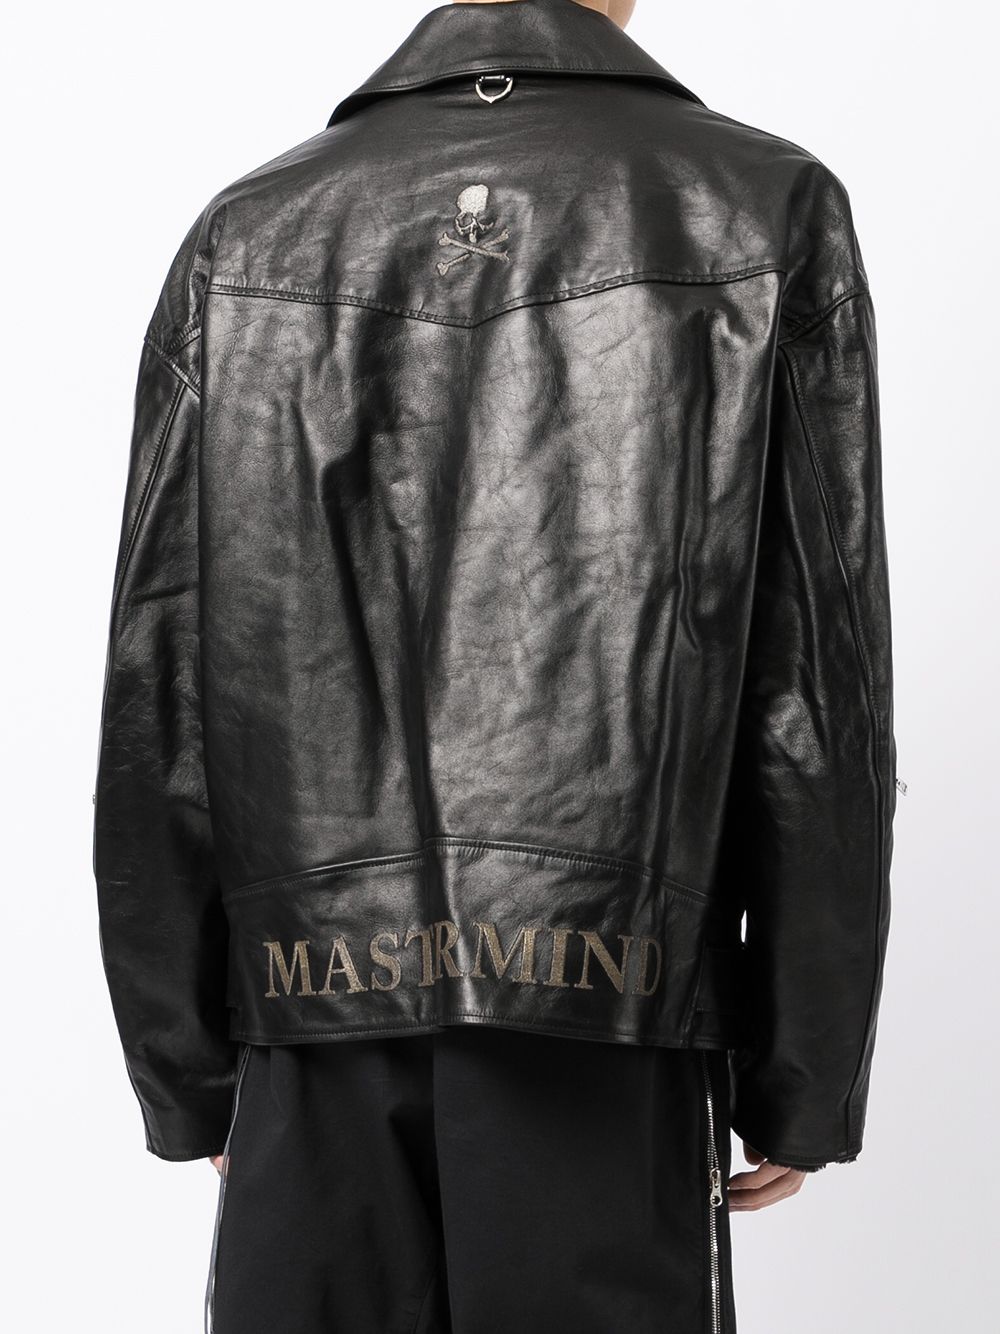 фото Mastermind world куртка с декоративной строчкой